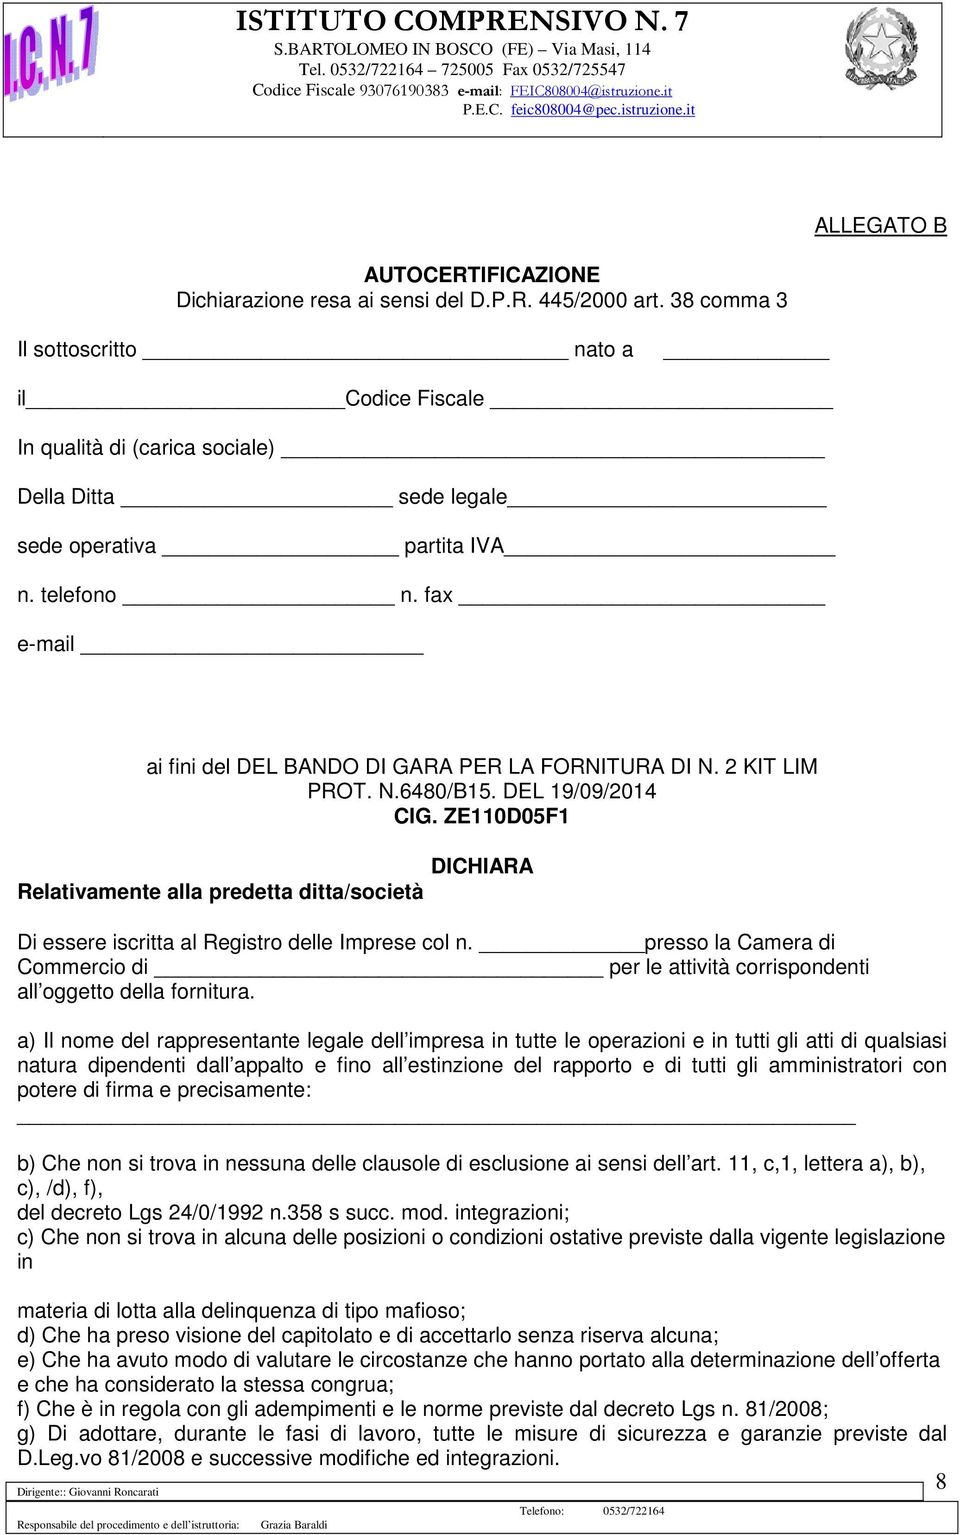 fax e-mail ai fini del DEL BANDO DI GARA PER LA FORNITURA DI N. 2 KIT LIM PROT. N.6480/B15. DEL 19/09/2014 CIG.